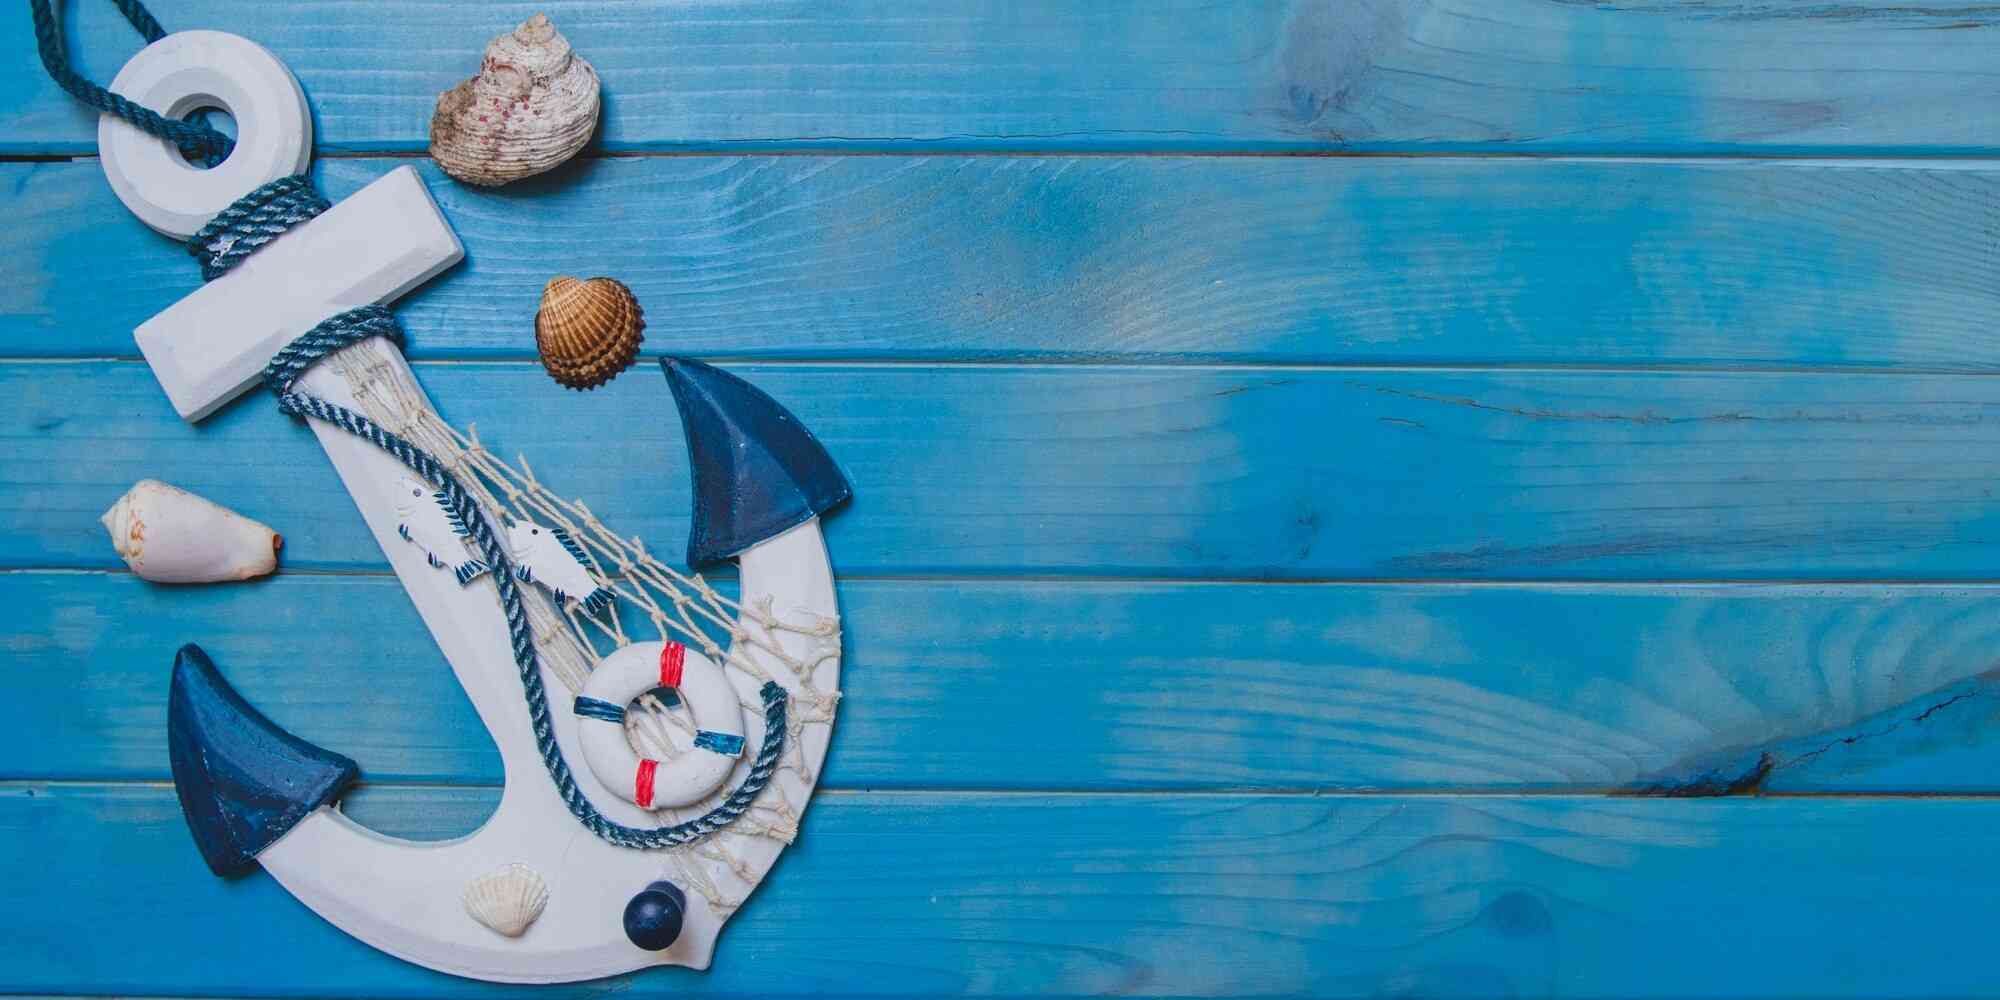 锚和贝壳的装饰品，挂在蓝色木板上。它代表着海洋中的力量、稳定和安全的象征。锚是船在航行时用来控制方向的工具；而贝壳则象征着海洋中的生物，它们被广泛用于装饰各种物品或艺术品。